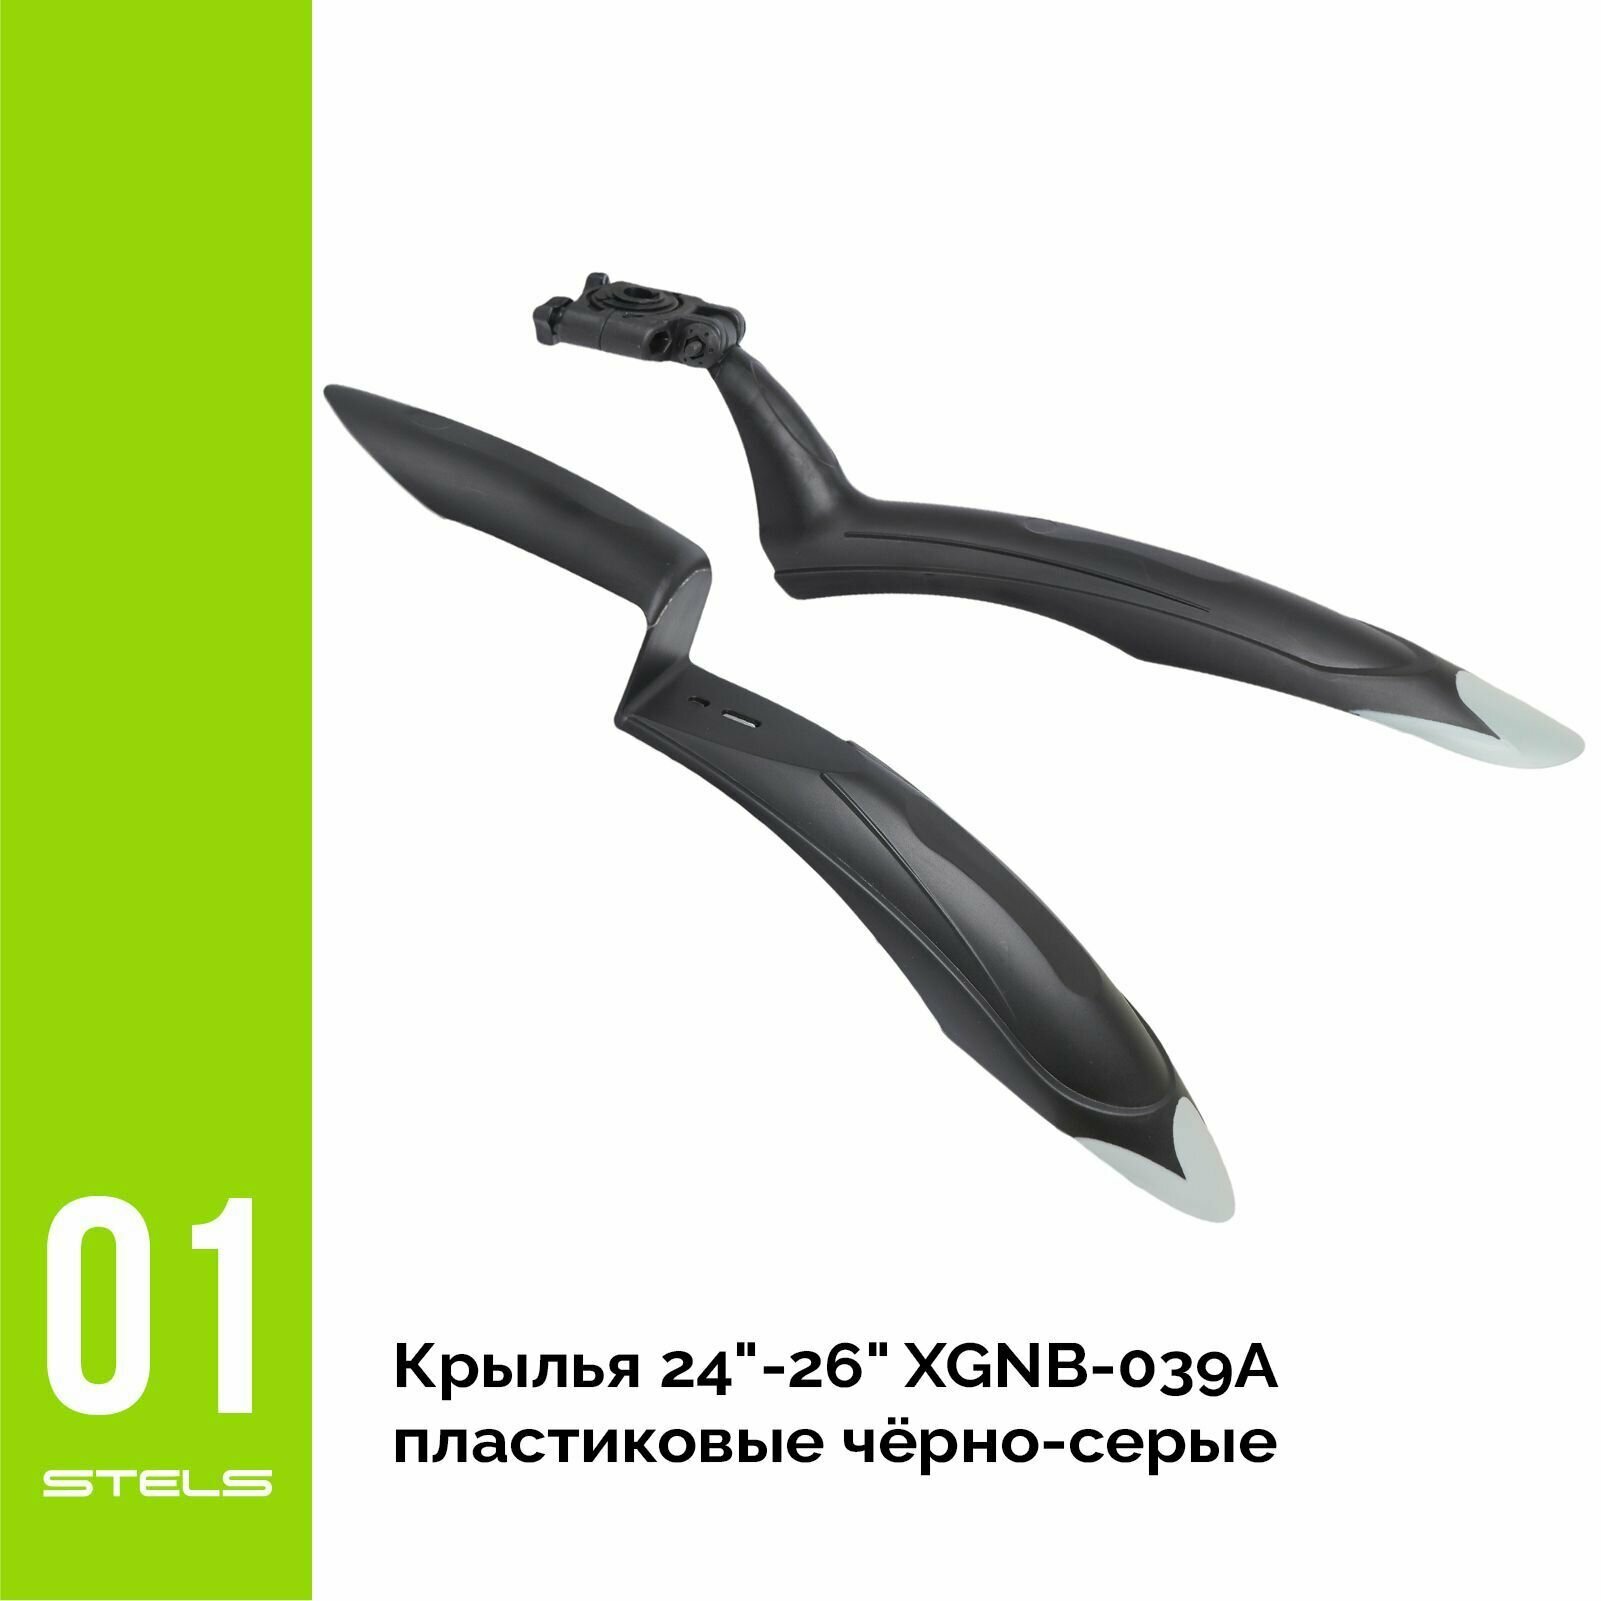 Крылья для велосипеда 24"-26" XGNB-039А пластиковые чёрно-серые NEW